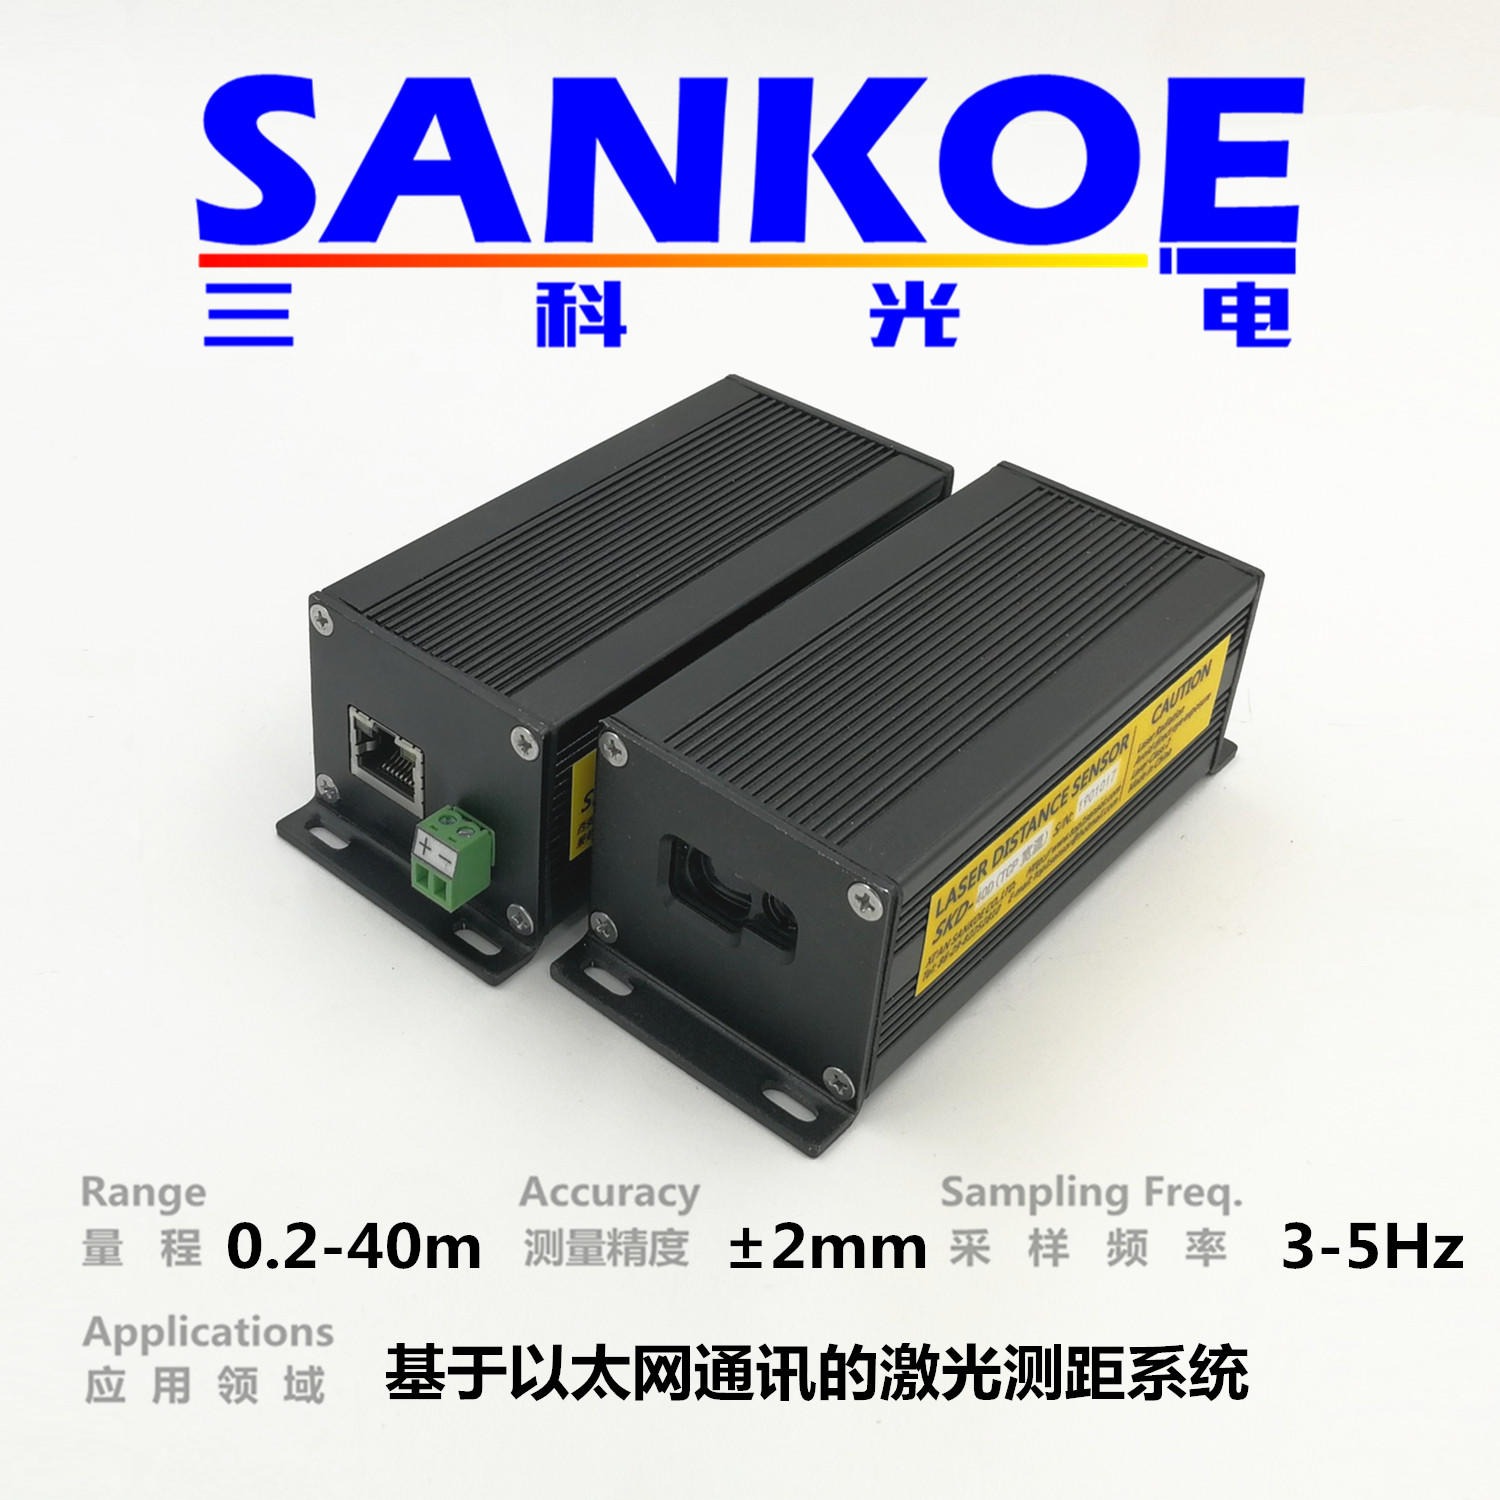 以太网激光测距传感器SKD-40E，三科光电SANKOE激光定位测距模块，ethernet网口输出图片